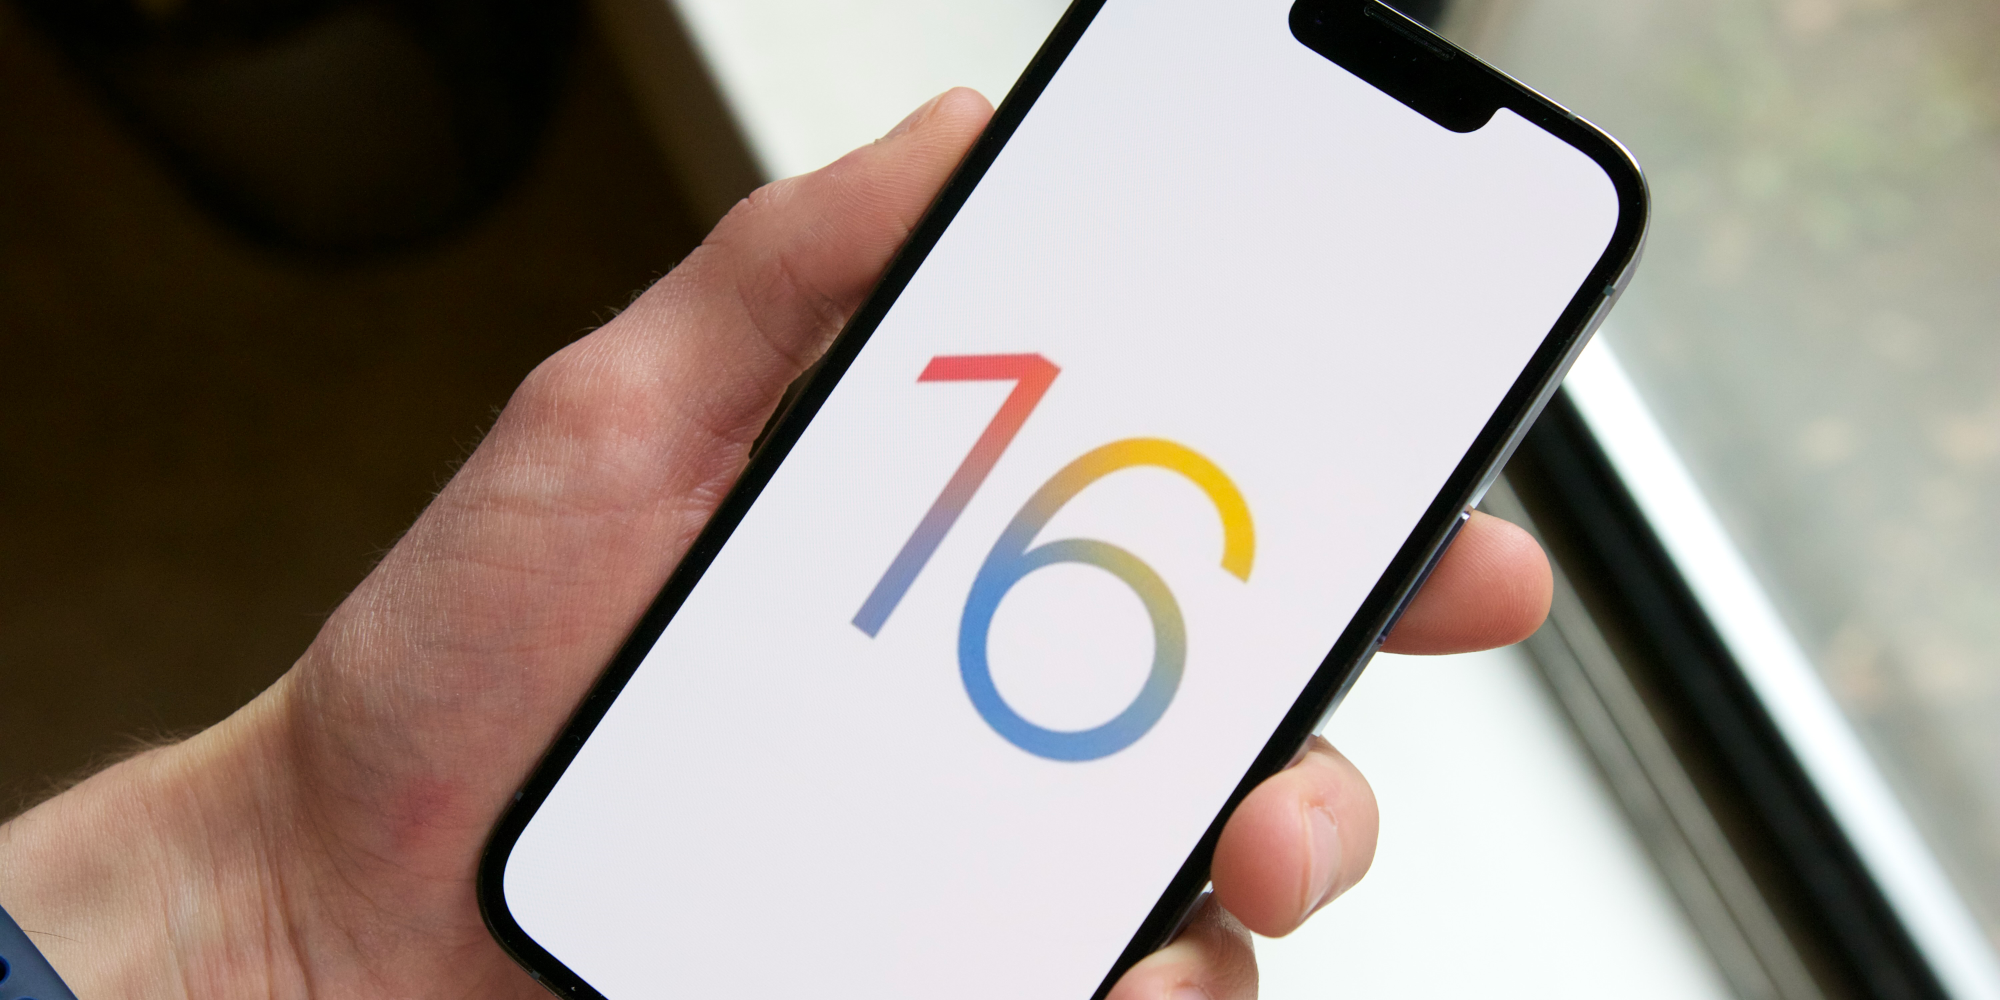 iOS 16 logo on an iPhone